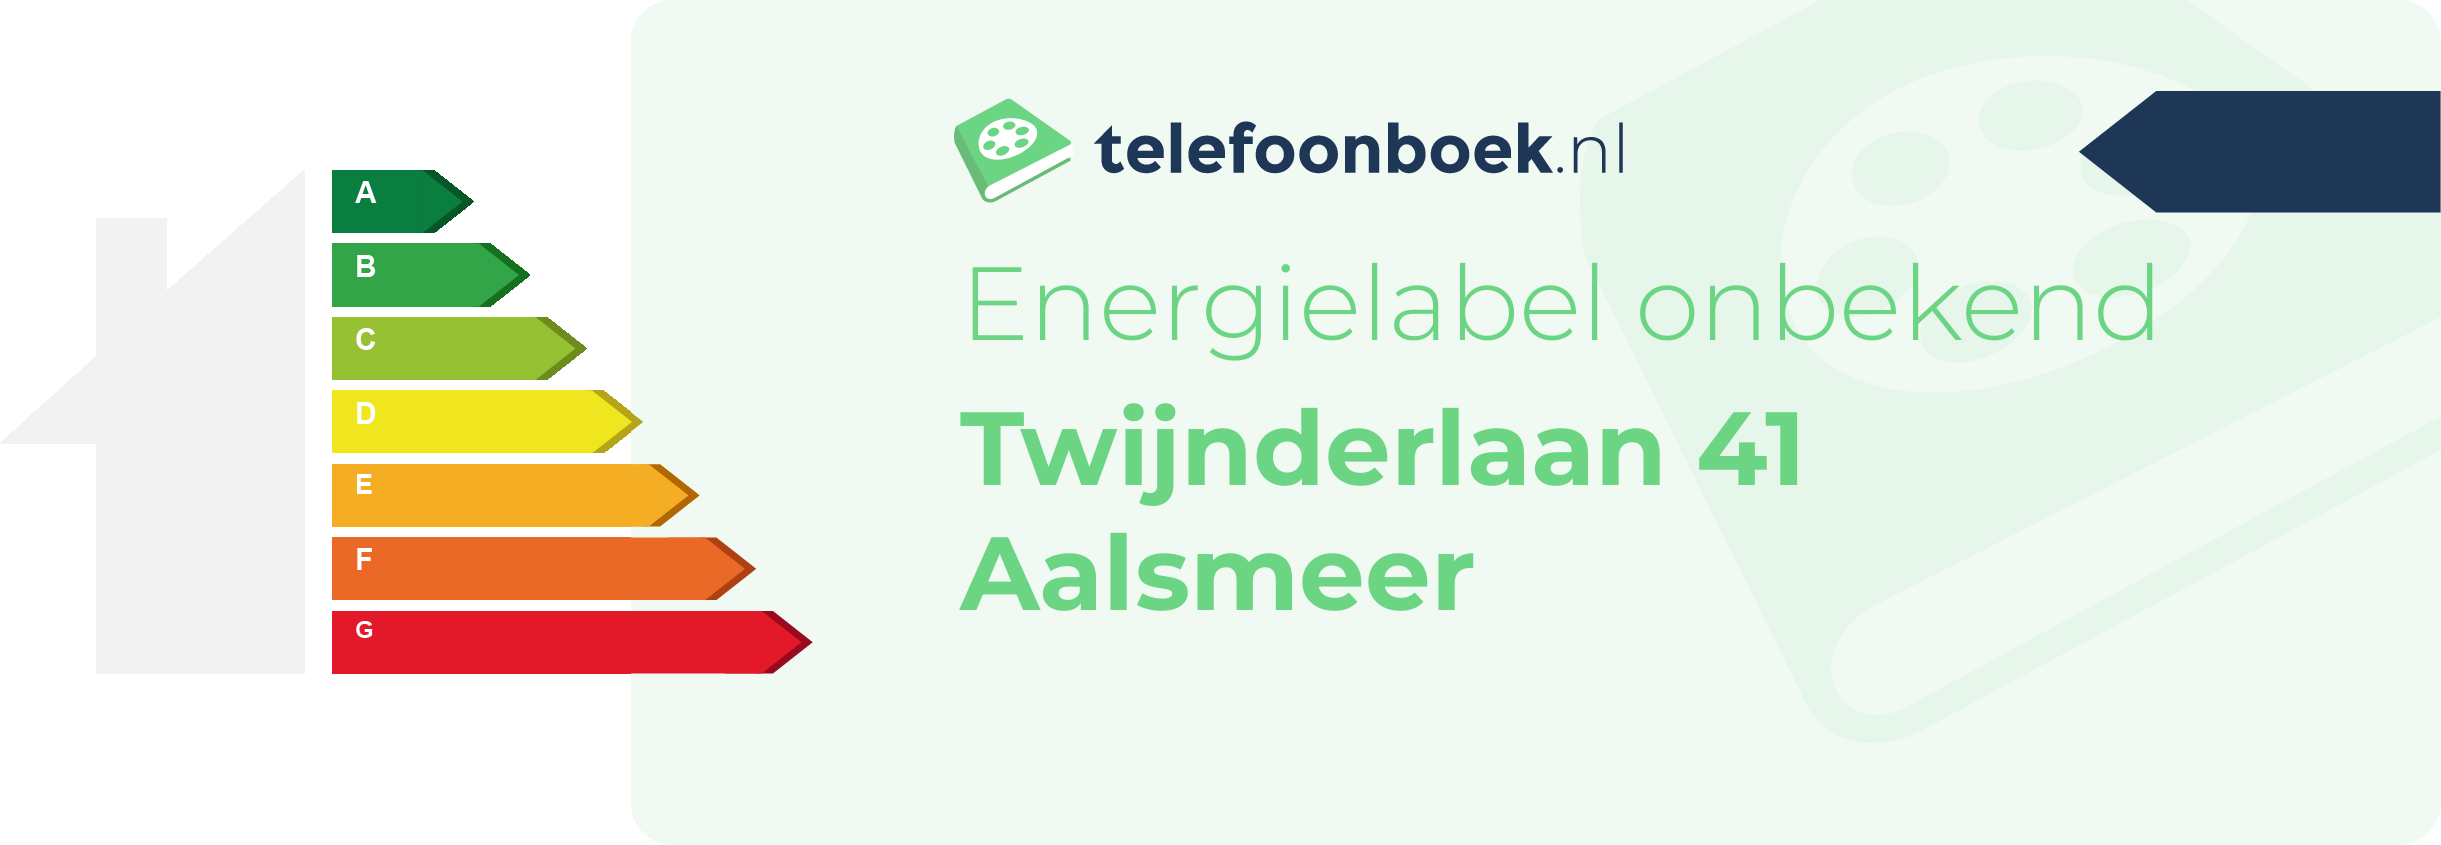 Energielabel Twijnderlaan 41 Aalsmeer